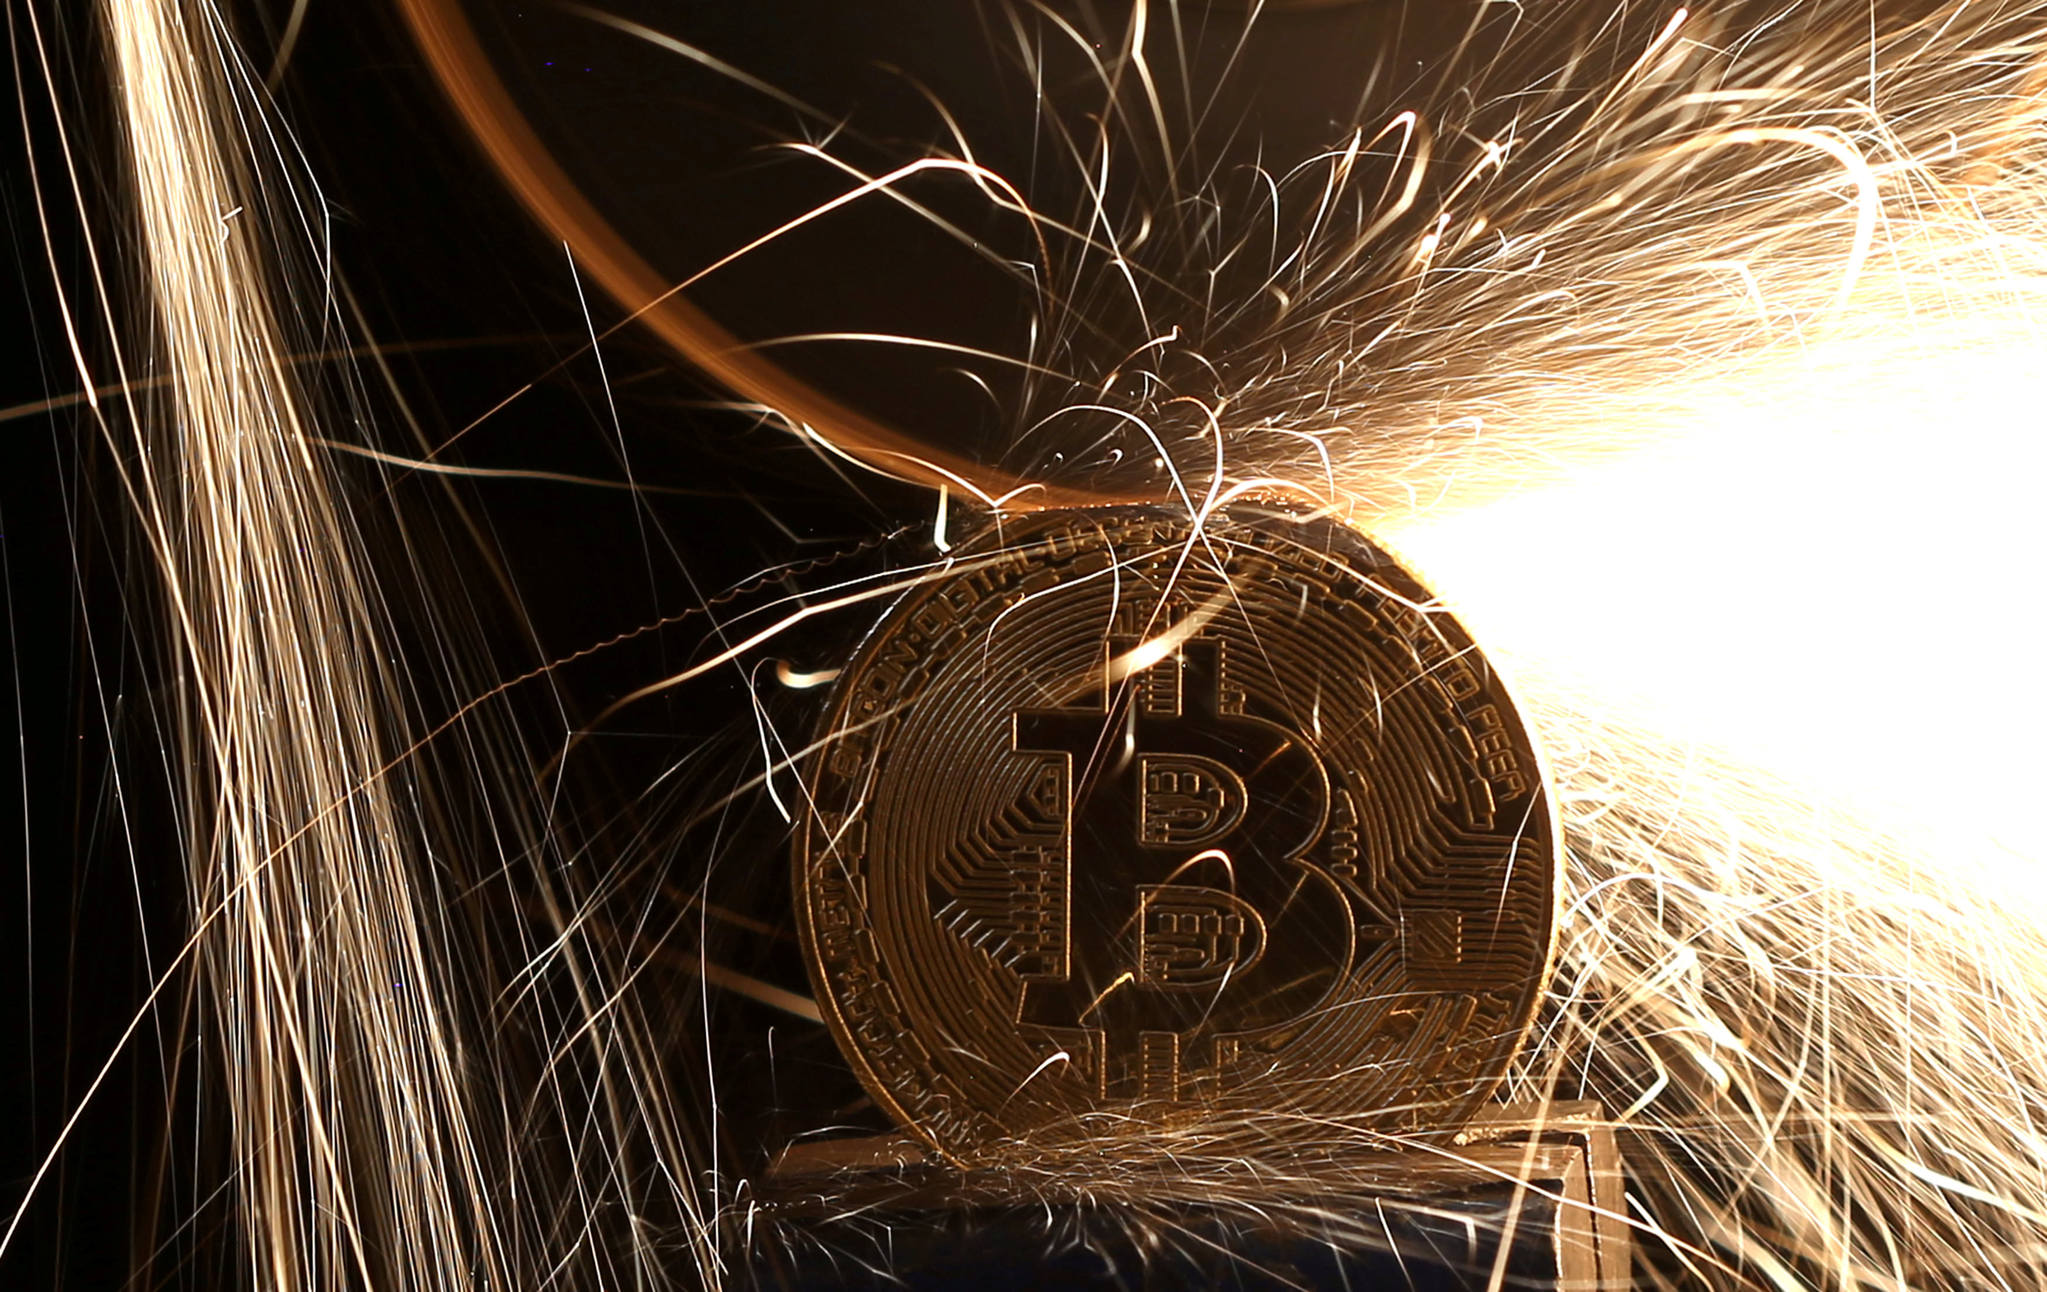 Bitcoin üreticileri Güneydoğu’yu kıskaca aldı